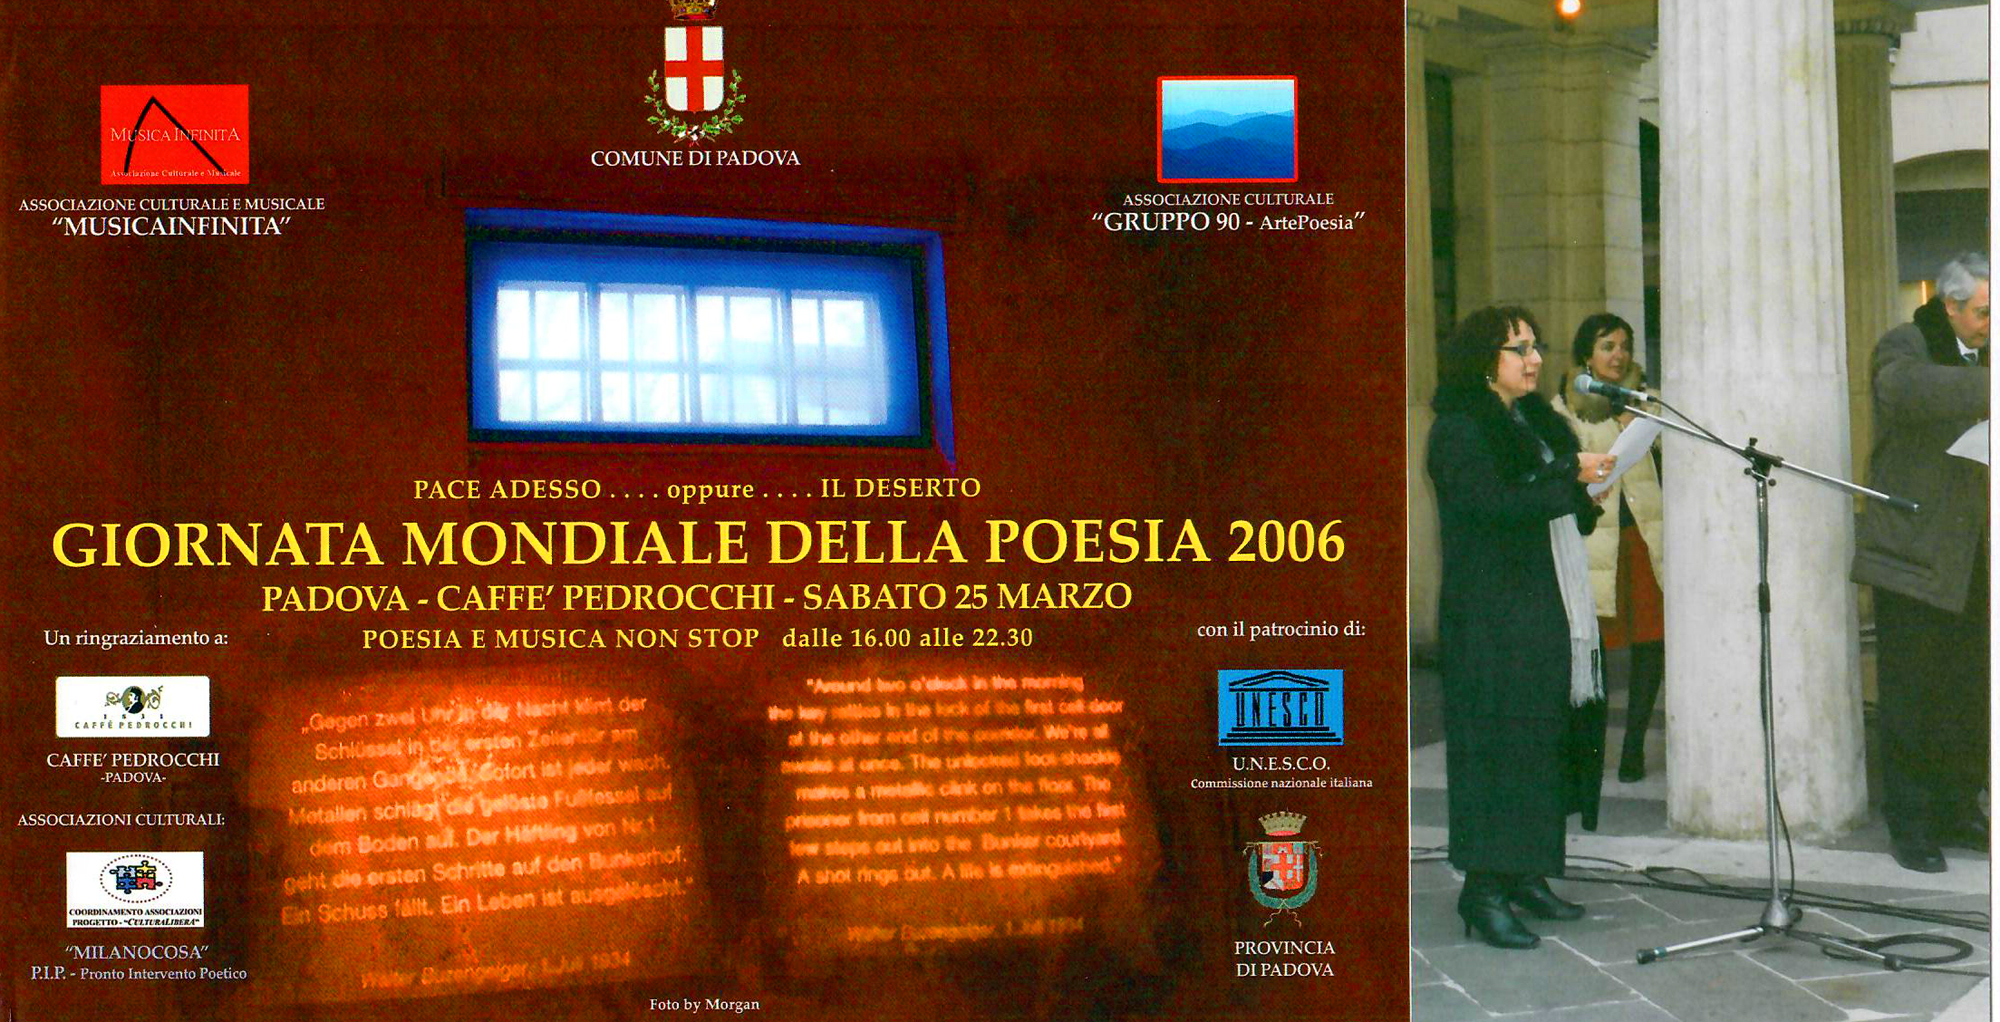 2006 - Lettura Poetica, Gladys Sica, “Giornata Mondiale della Poesia 2006”, Caffè Pedrocchi, organizzata dal poeta Alessandro Cabianca, Padova